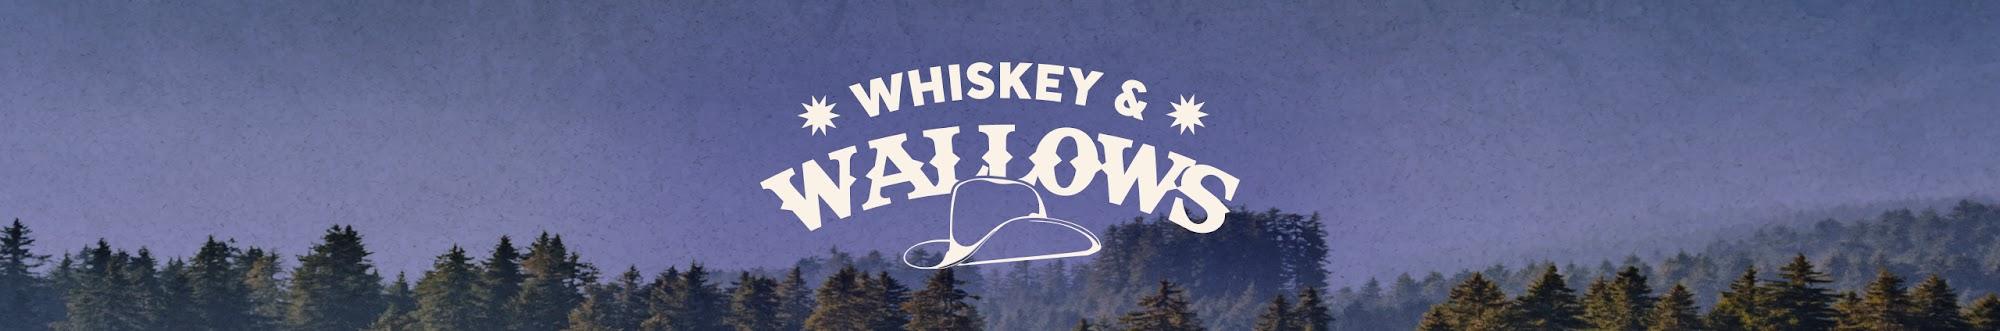 Whiskey & Wallows